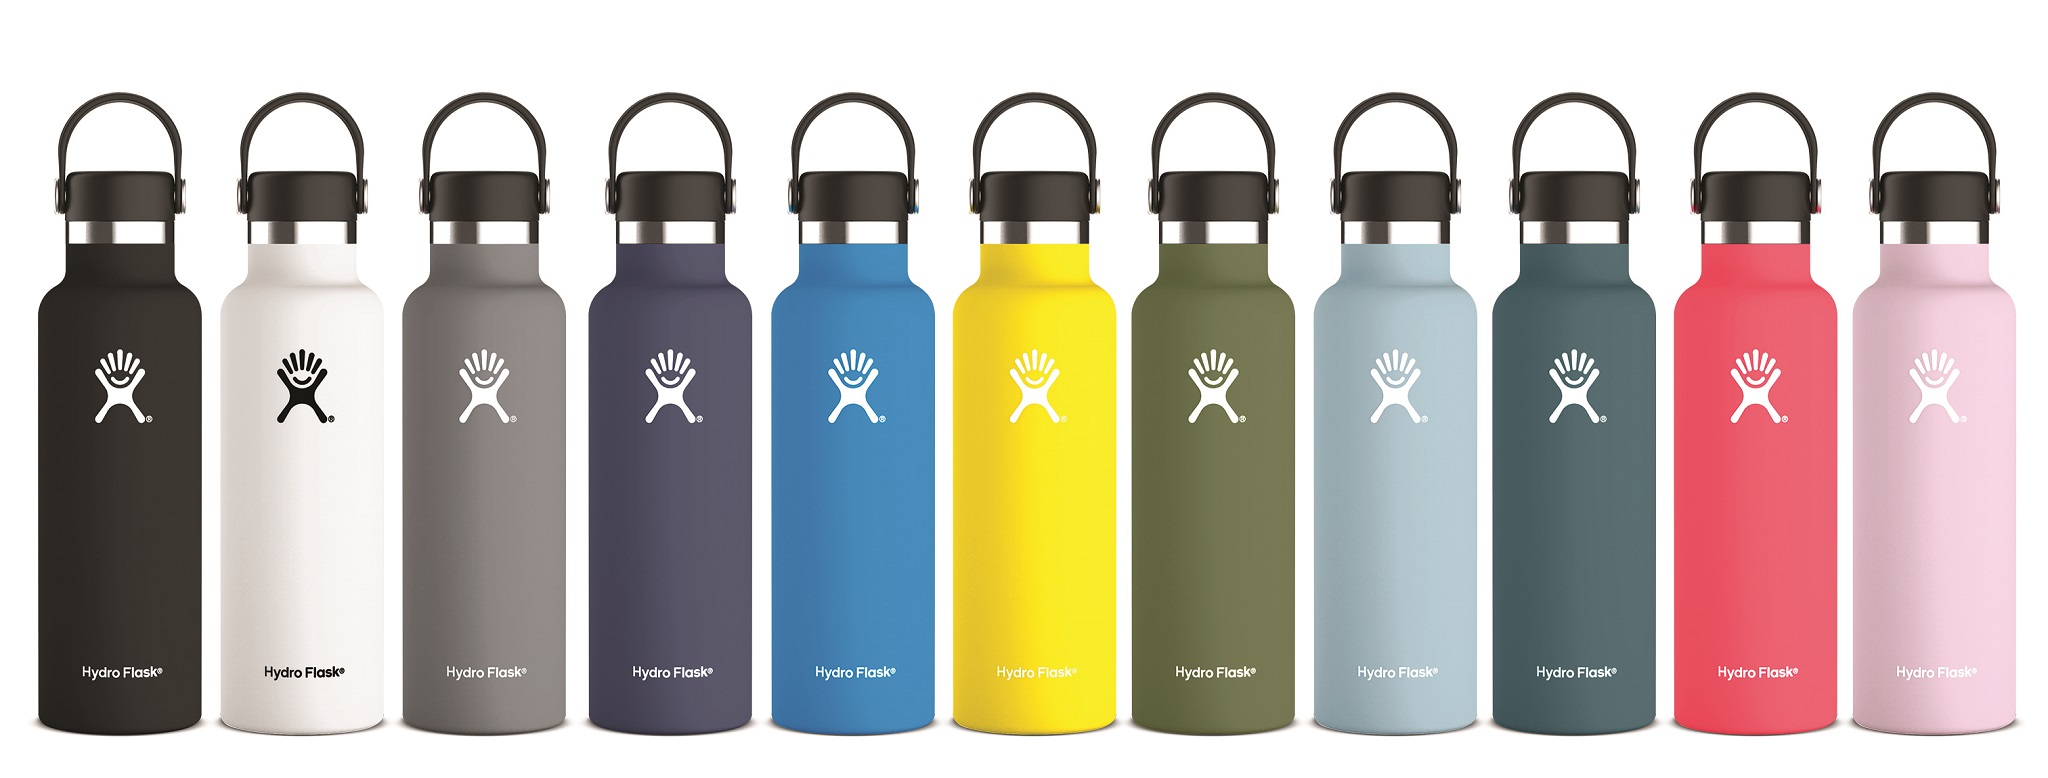 Stilvolle Durstlöscher von Hydro Flask in neuen Pantone-Trendfarben